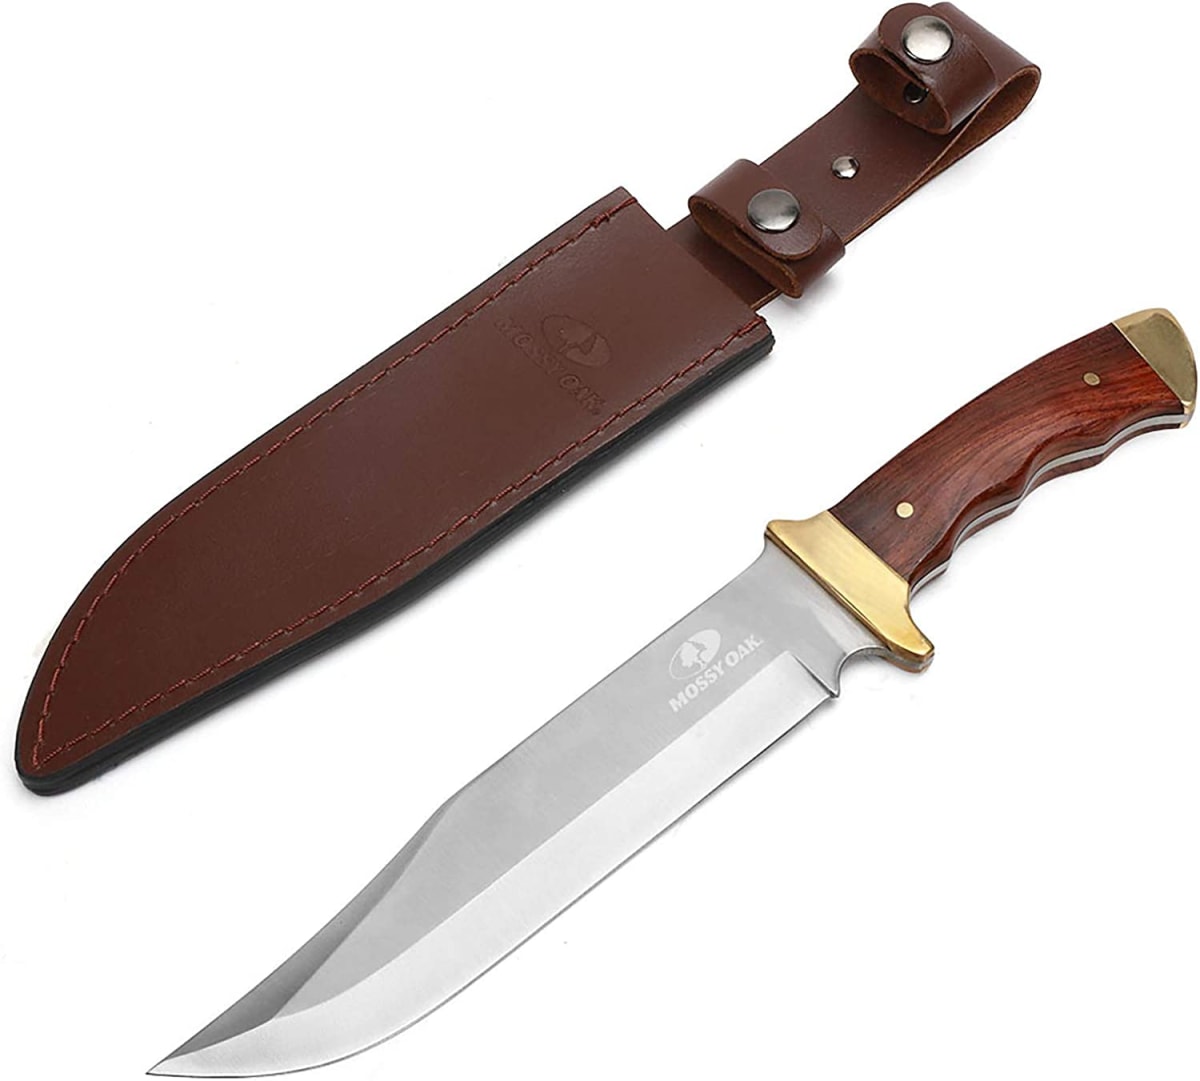 MOSSY OAK 14-inch Bowie Knife